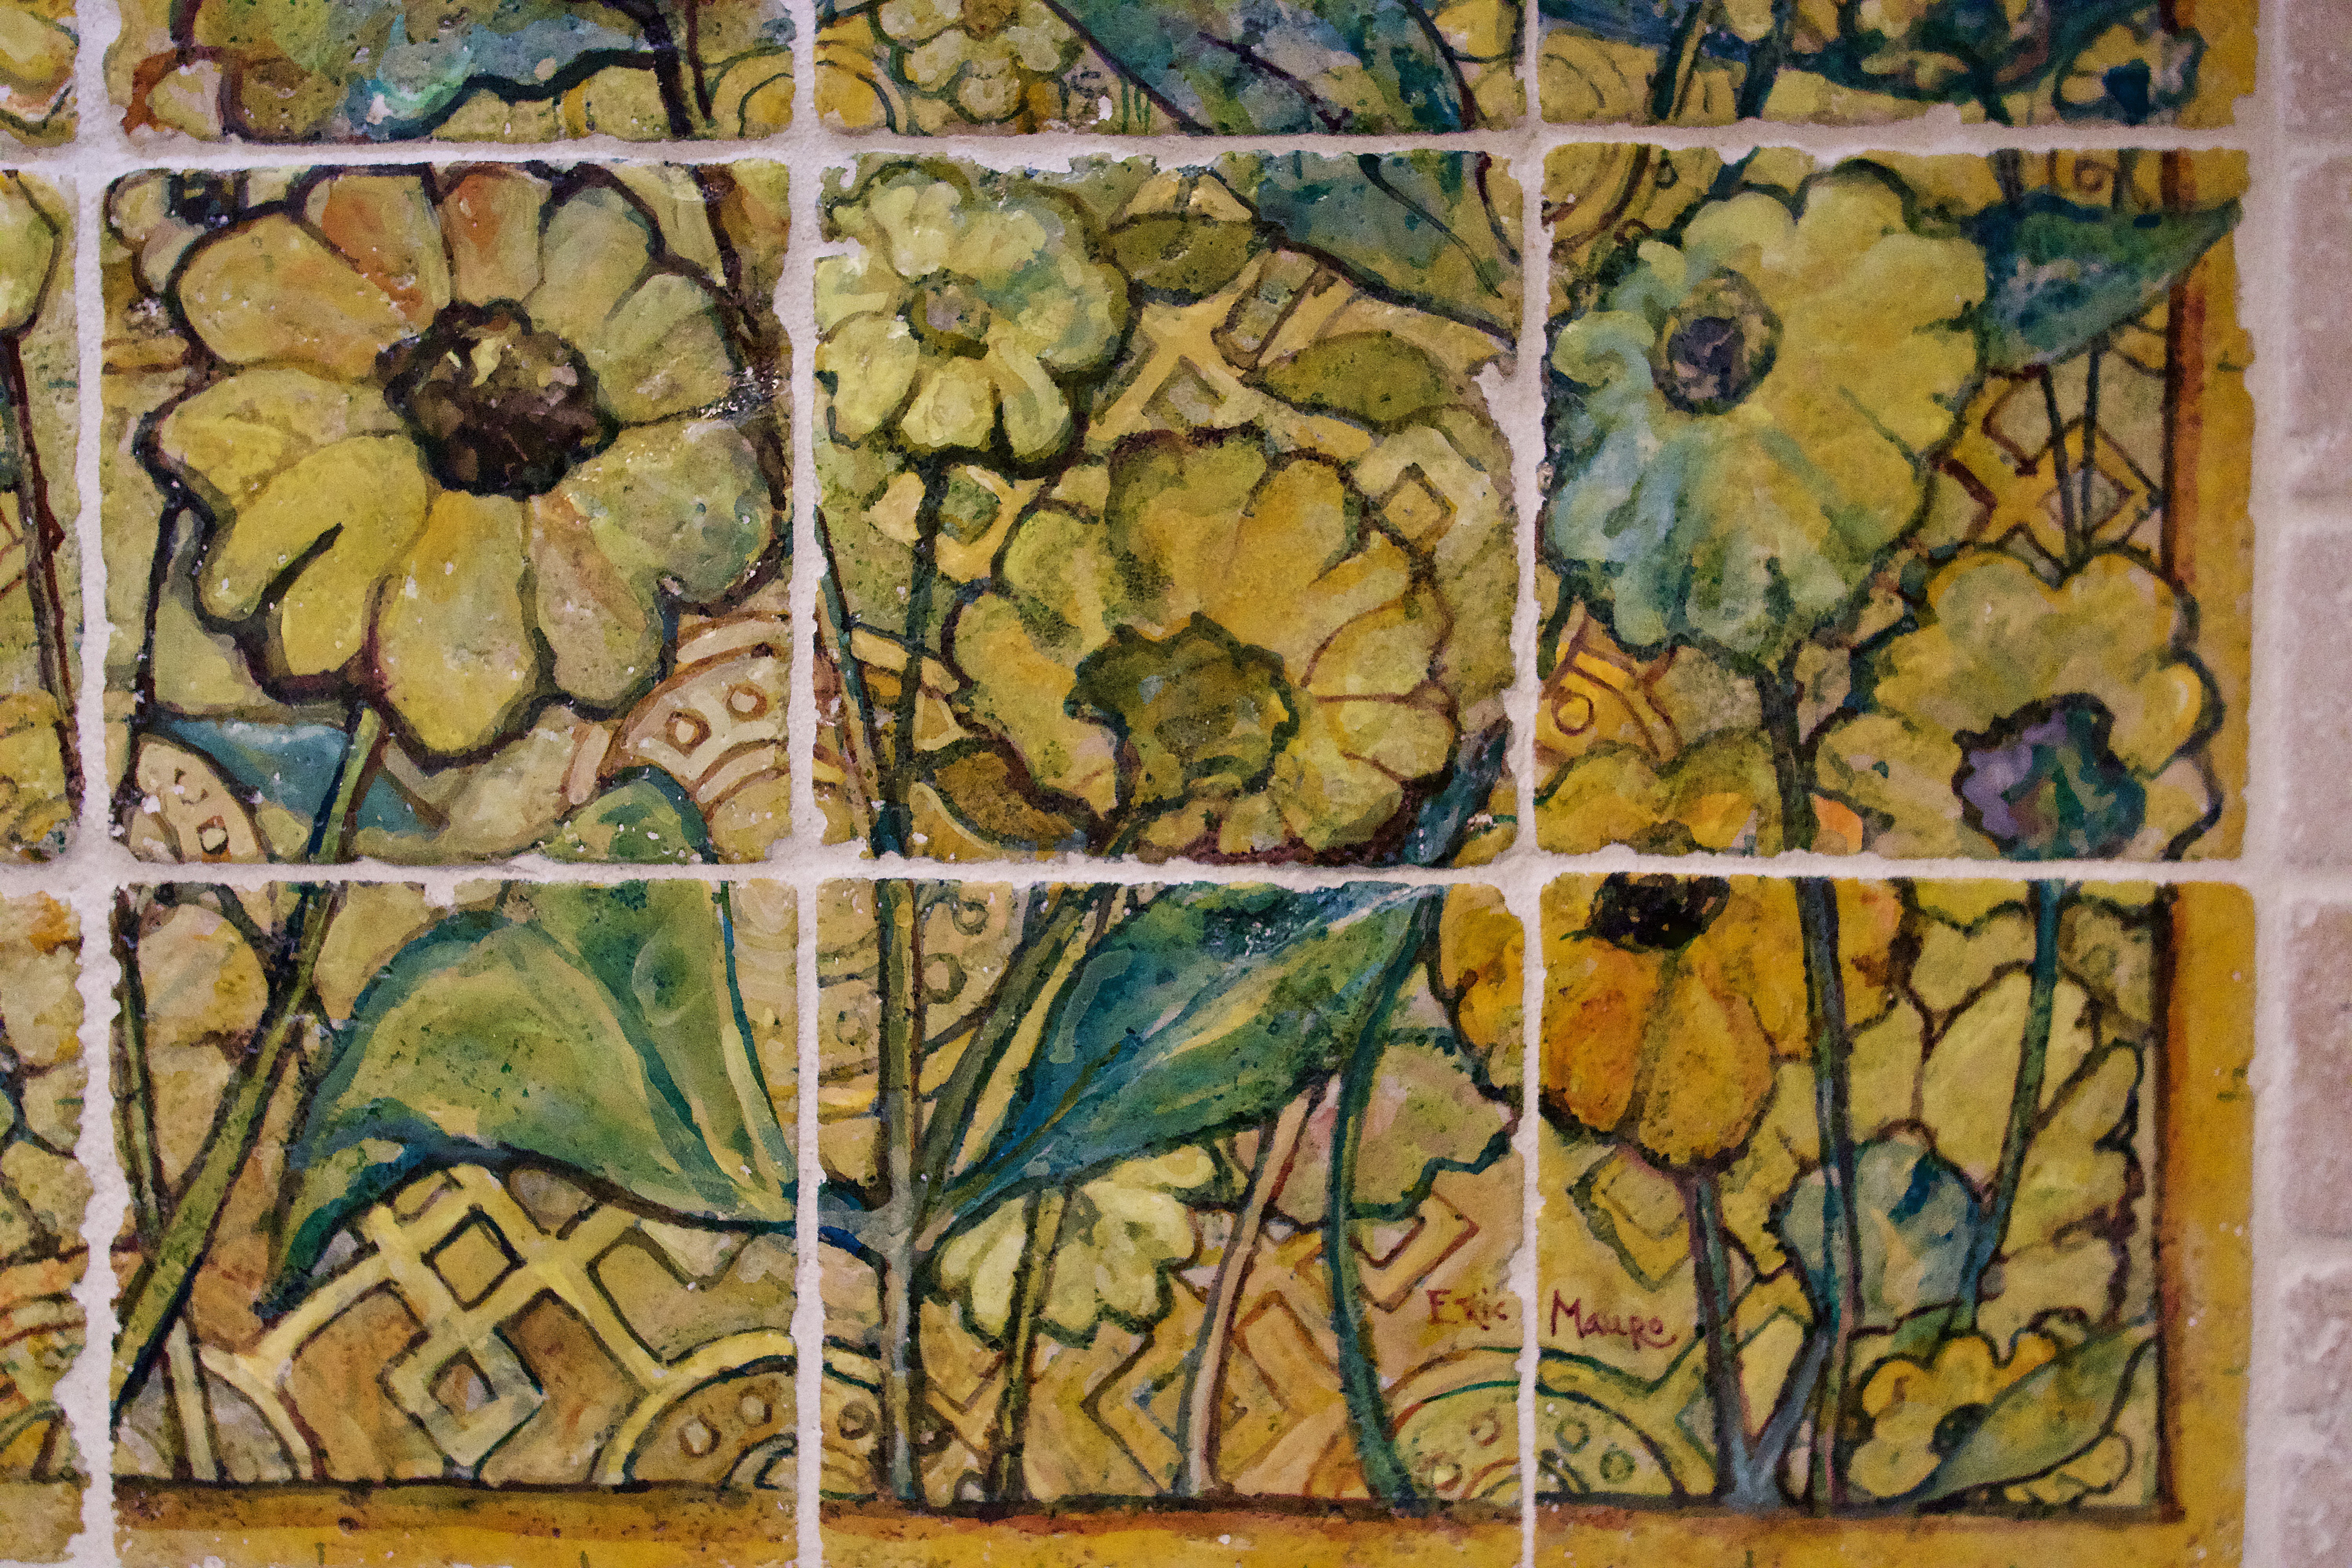 Sunflower design for kitchen backsplash tiles